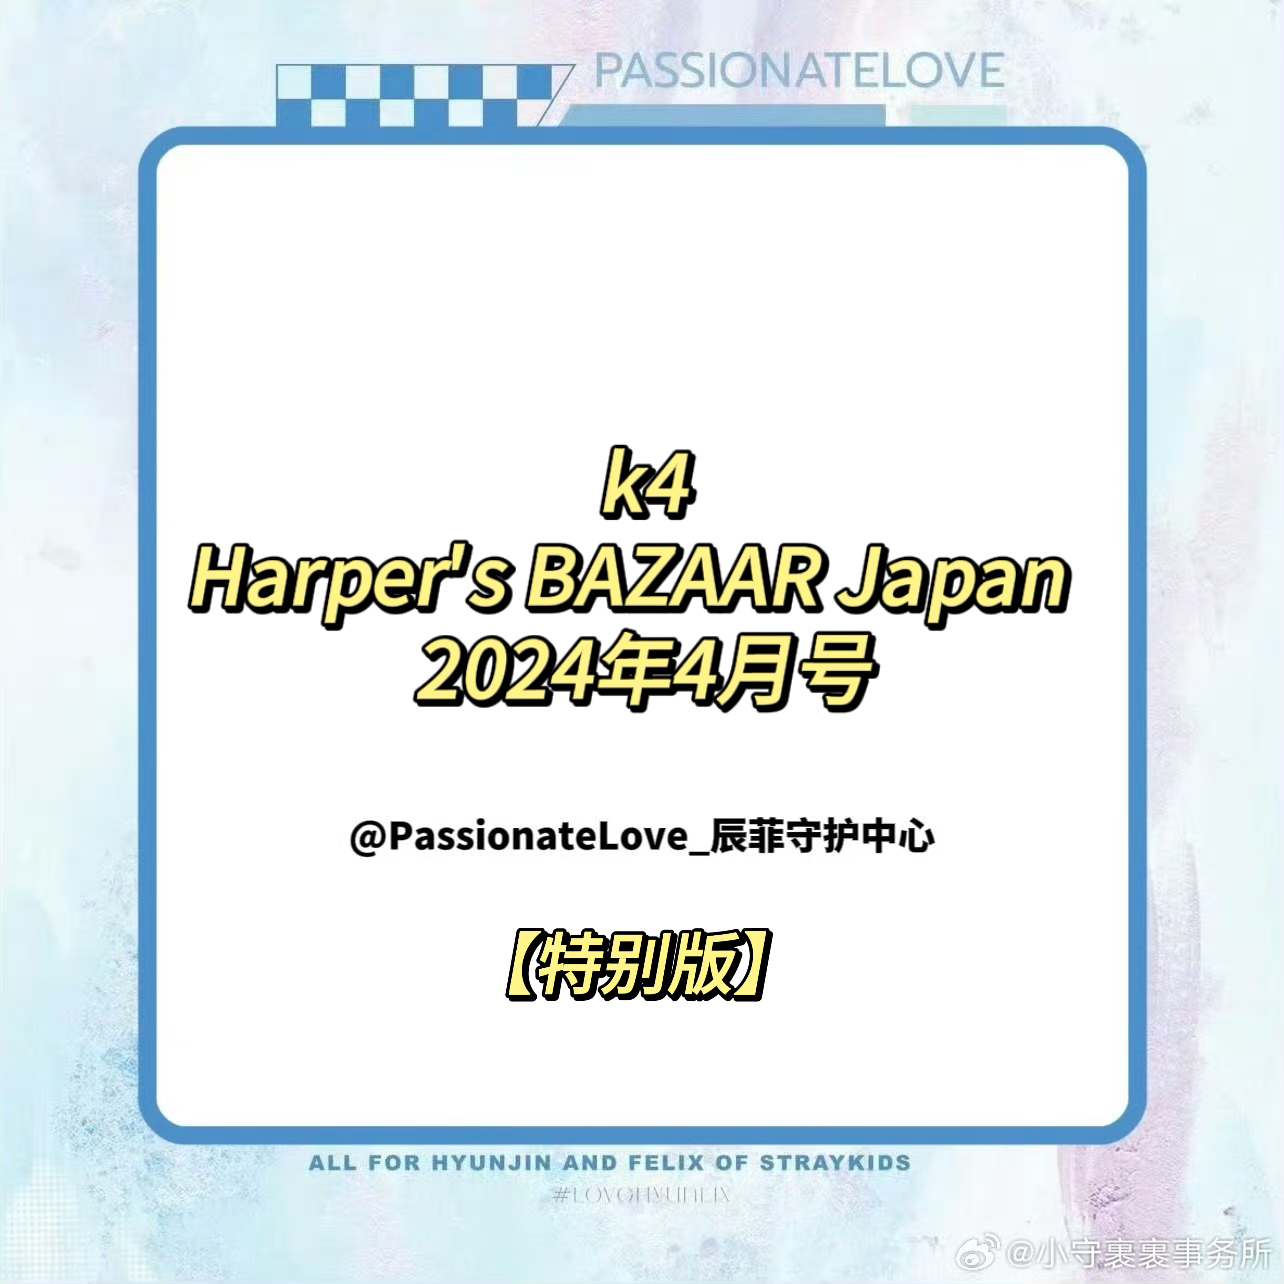 [全款] 芭莎HARPER`S BAZAAR 2024.04 special issue (Japanese Ver.) (封面 : Felix / 内页 : Felix 8p) _PassionateLove_辰菲守护中心